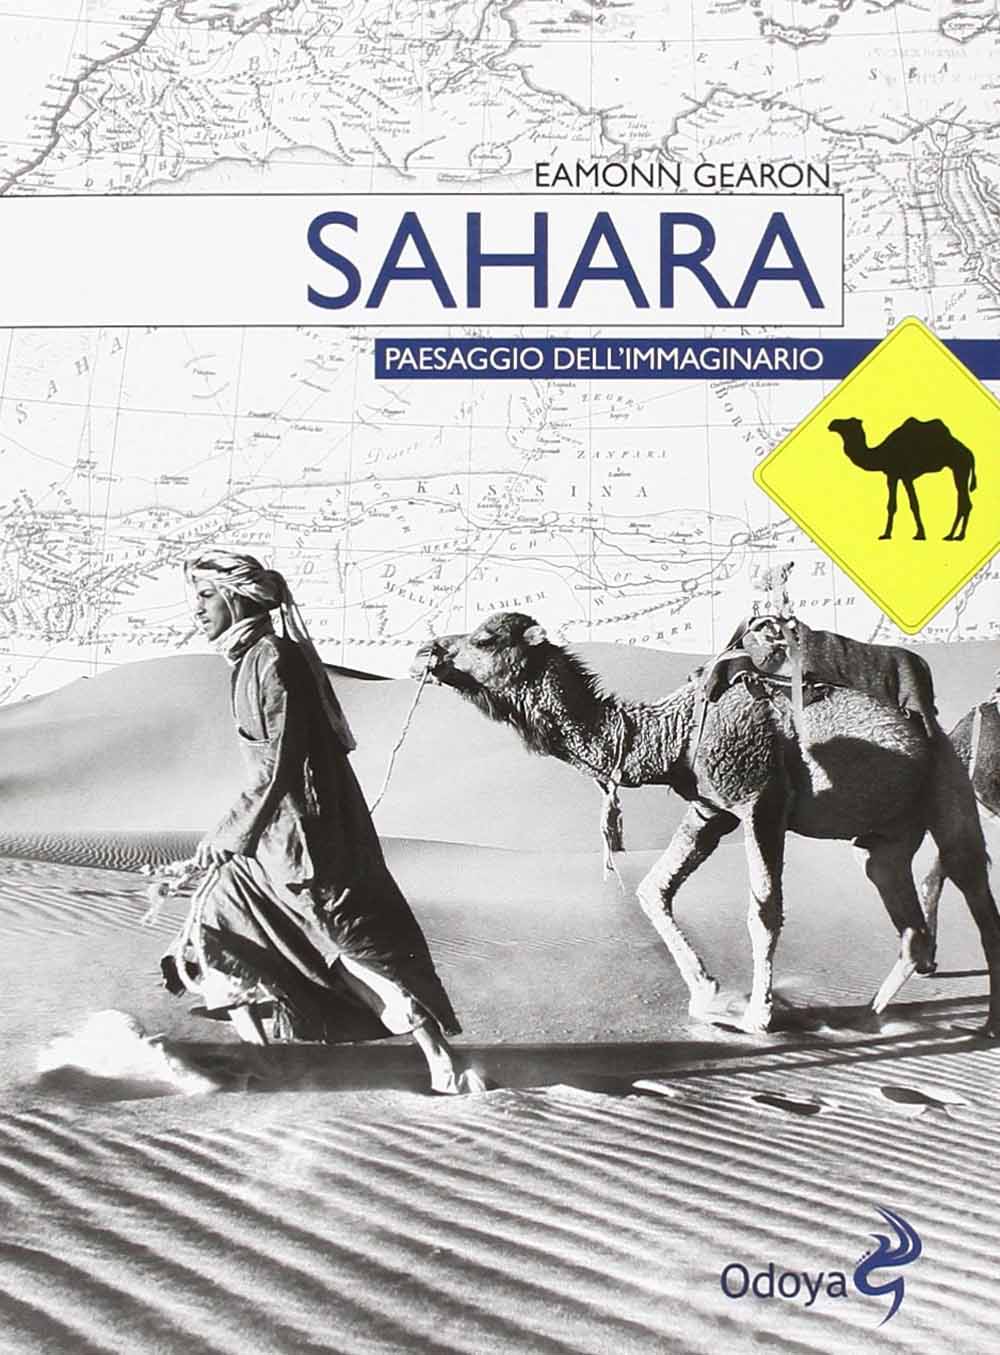 Libri Eamonn Gearon - Sahara. Paesaggio Dell'Immaginario NUOVO SIGILLATO, EDIZIONE DEL 27/02/2014 SUBITO DISPONIBILE